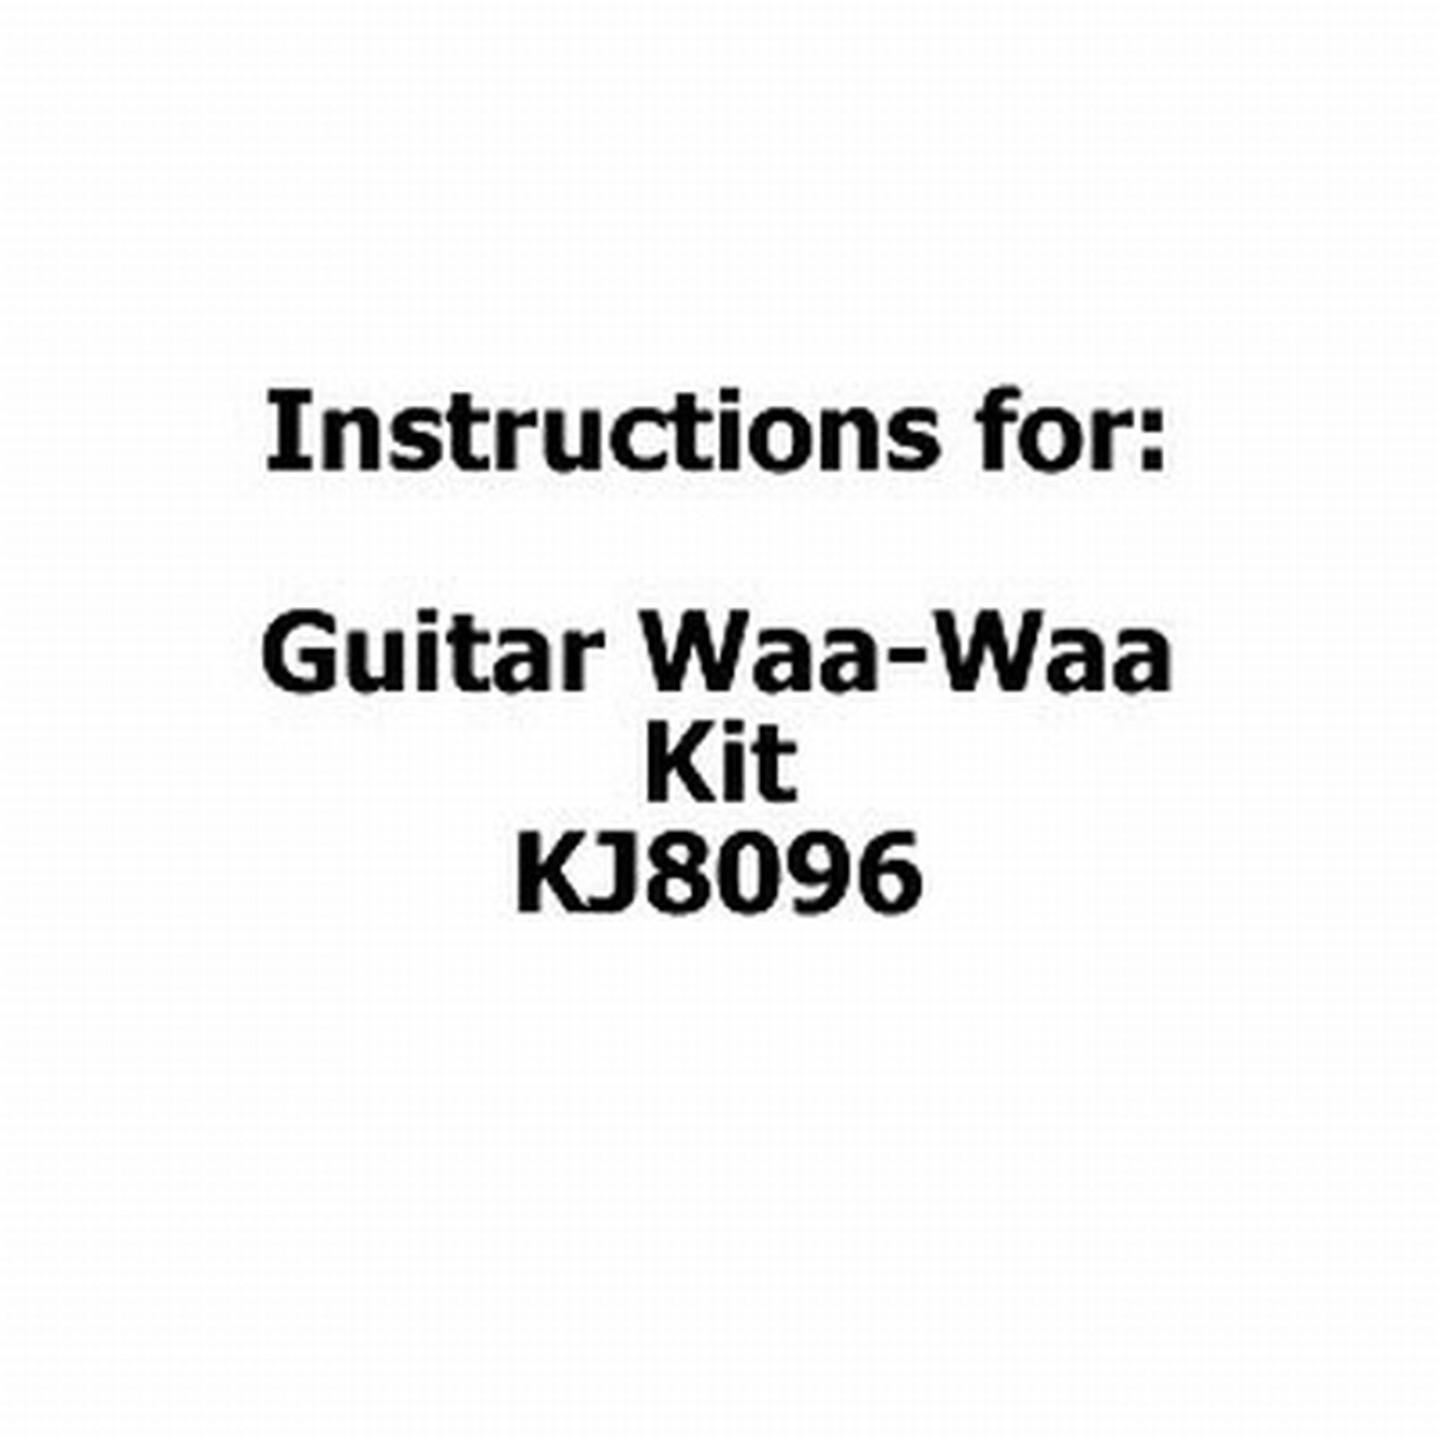 Instructions for Guitar Waa-Waa Kit KJ8096